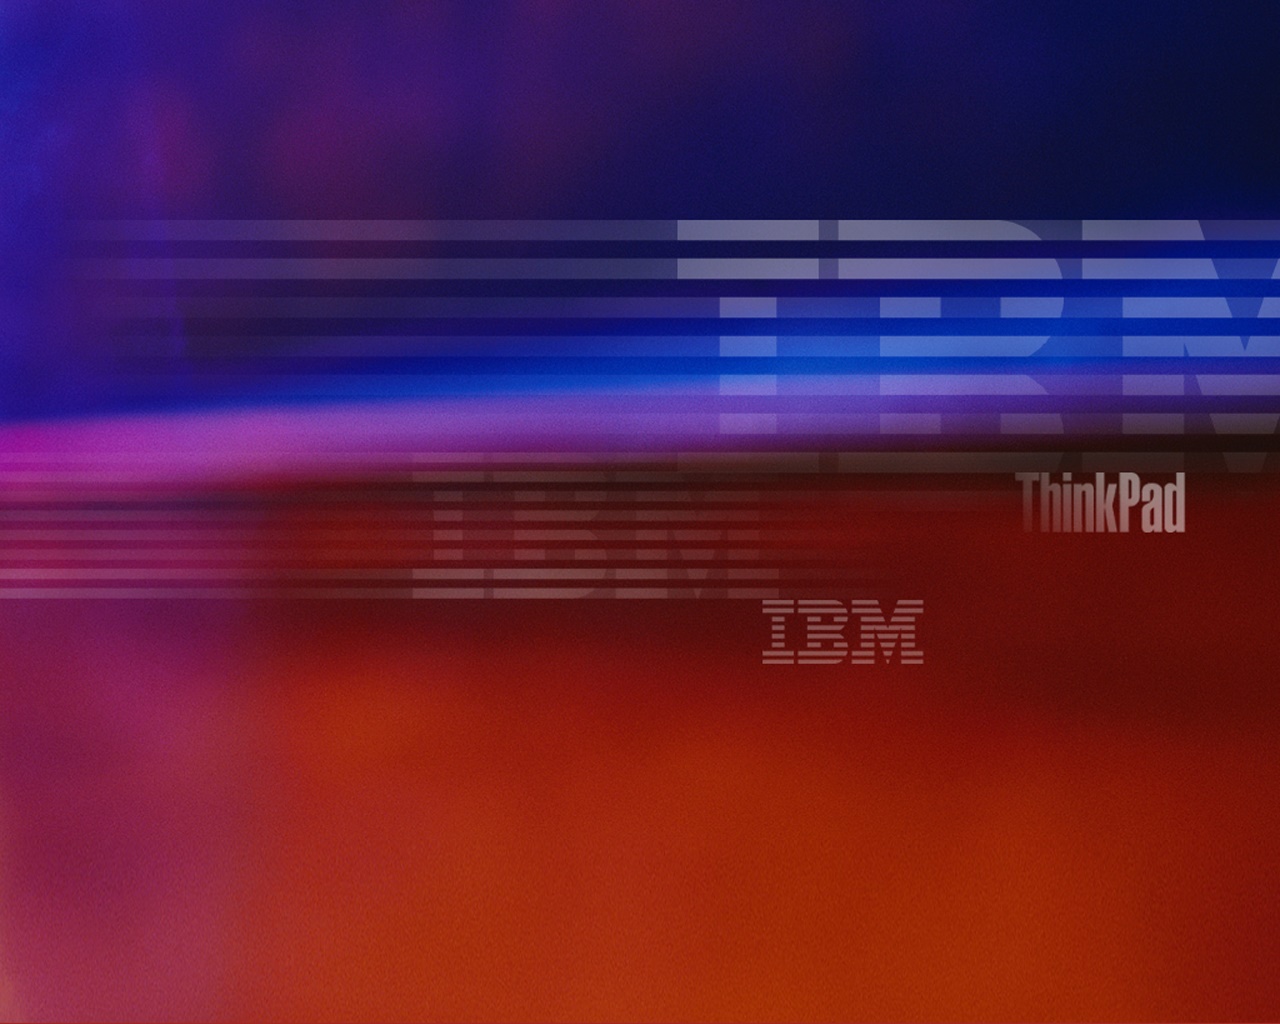 IBM ThinkPad wallpapers IBM ThinkPad stock photos